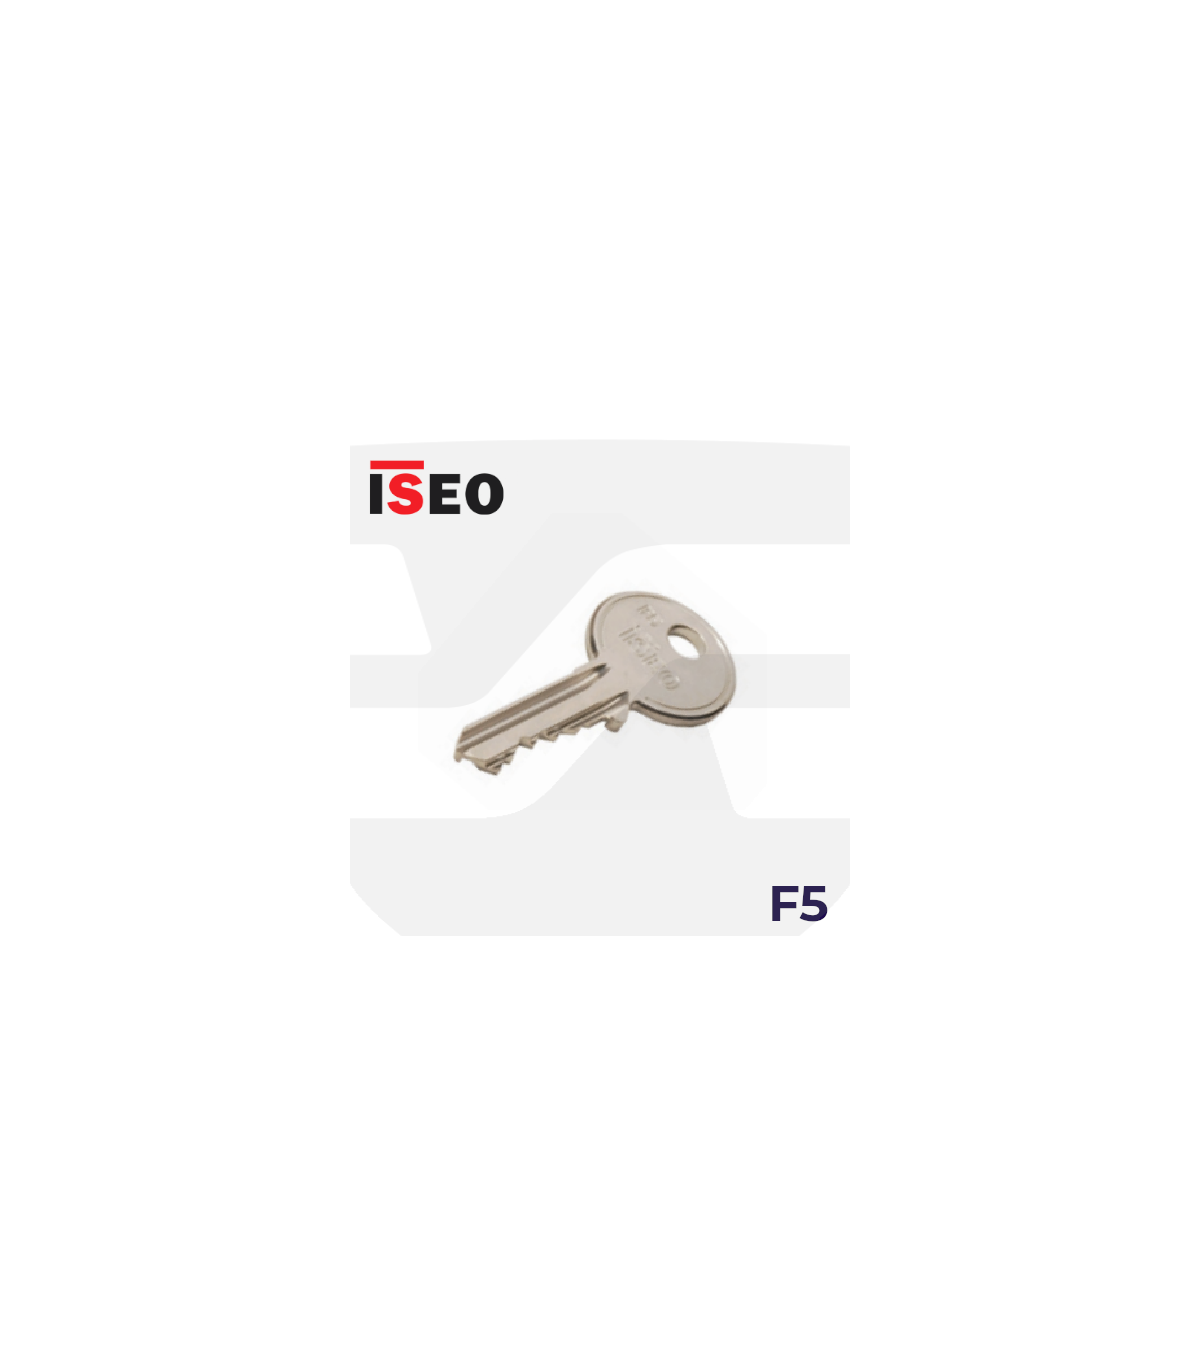 Cilindros de puerta de doble embrague de seguridad F5 Sistemas de golpeo,  taladro, ganzuing y antisiestas, 2.362 in (30+1.181 in), 5 llaves, níquel